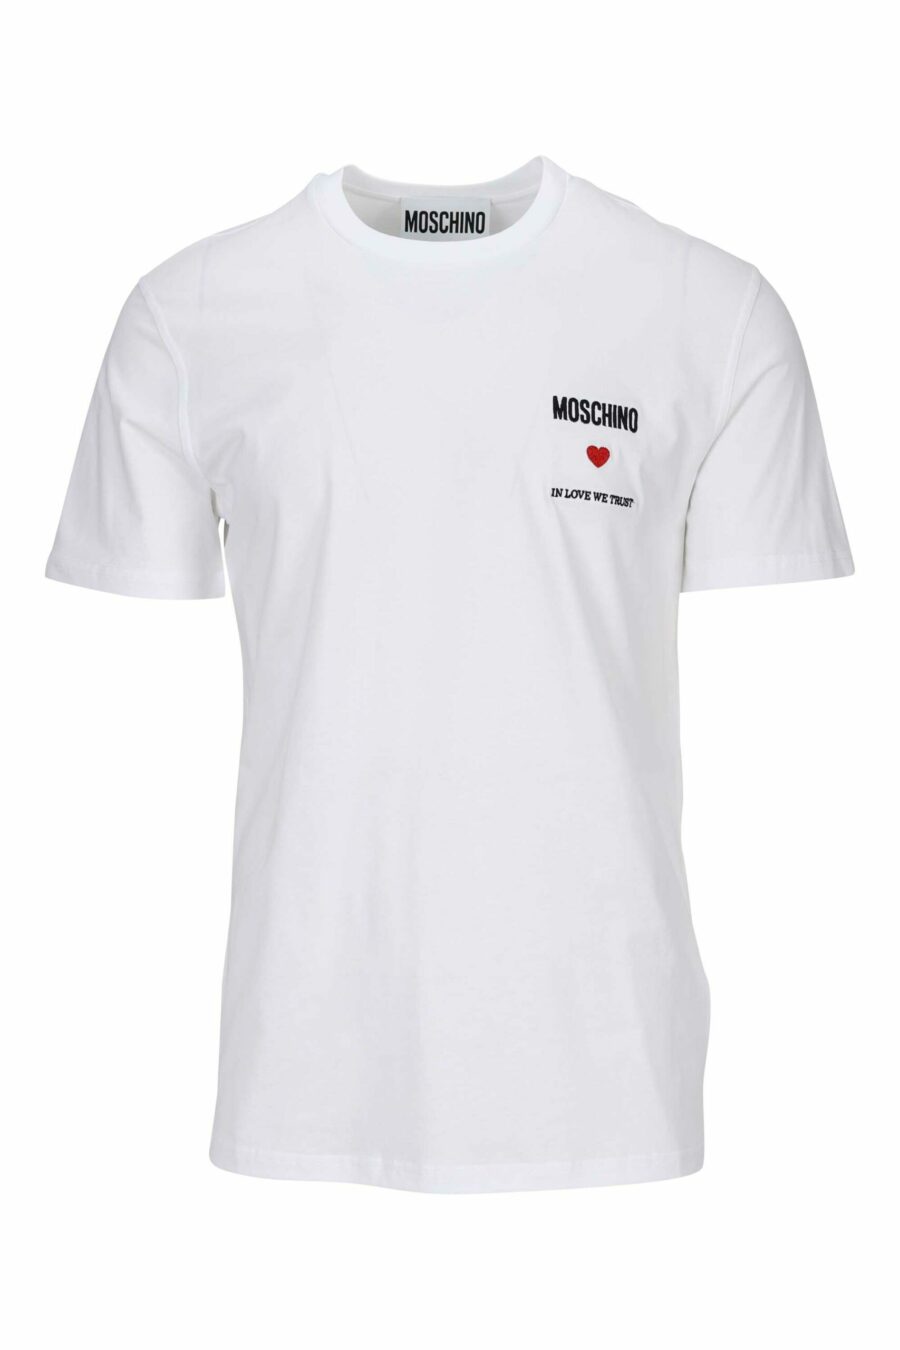 Weißes T-Shirt mit Minilog "in love we trust" - 667113765501 skaliert